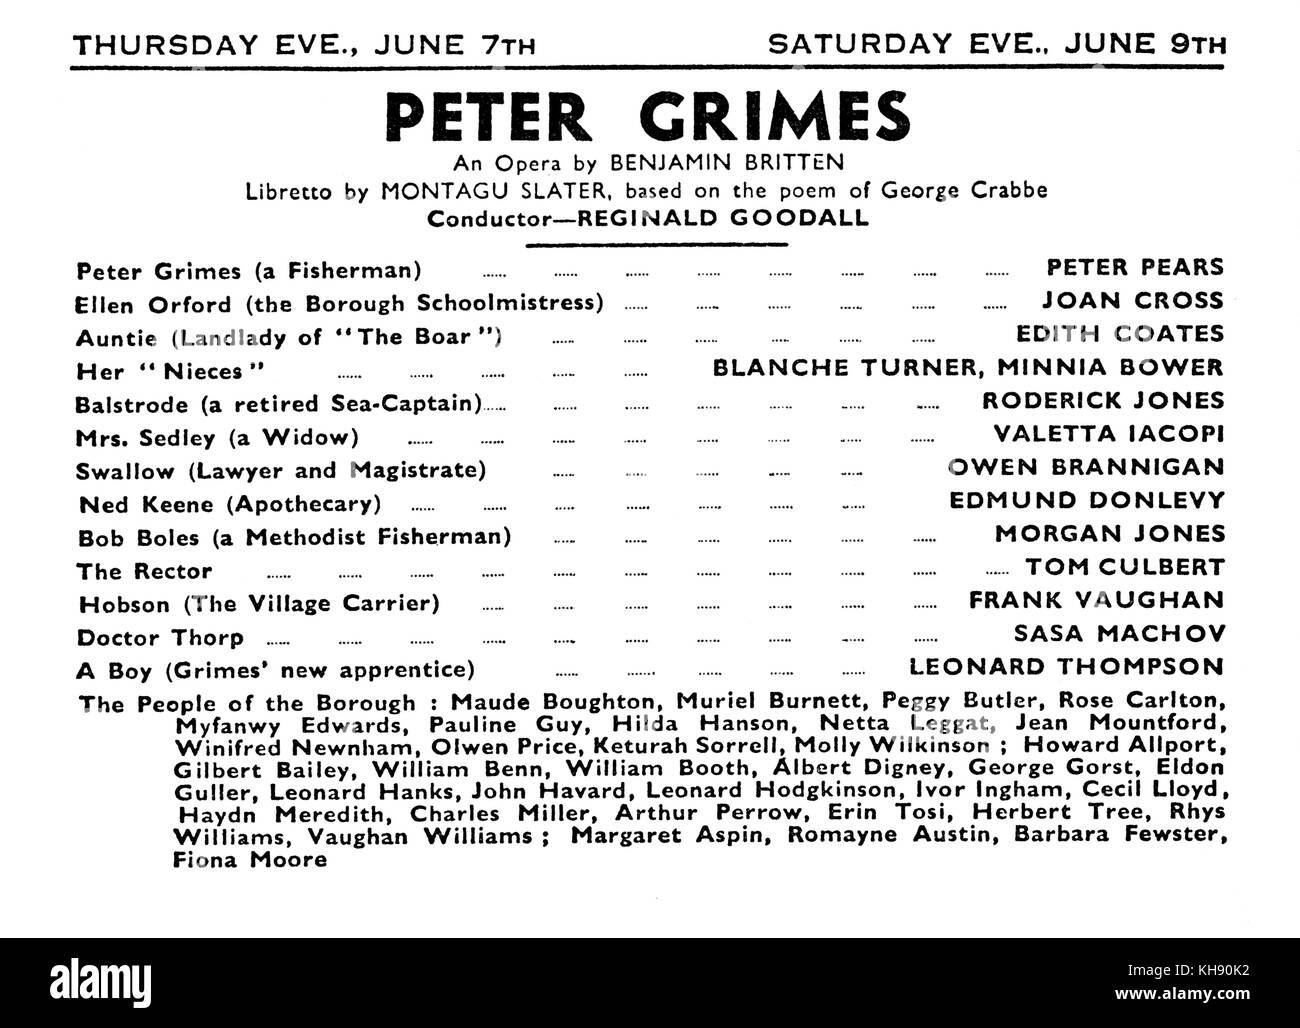 Britten 's opera 'Peter Grimes' - programma di premiere in Sadler's Wells, London, 1945 con full cast. Compositore inglese, direttore e pianista, 22 novembre 1913 - 4 dicembre 1976. Foto Stock